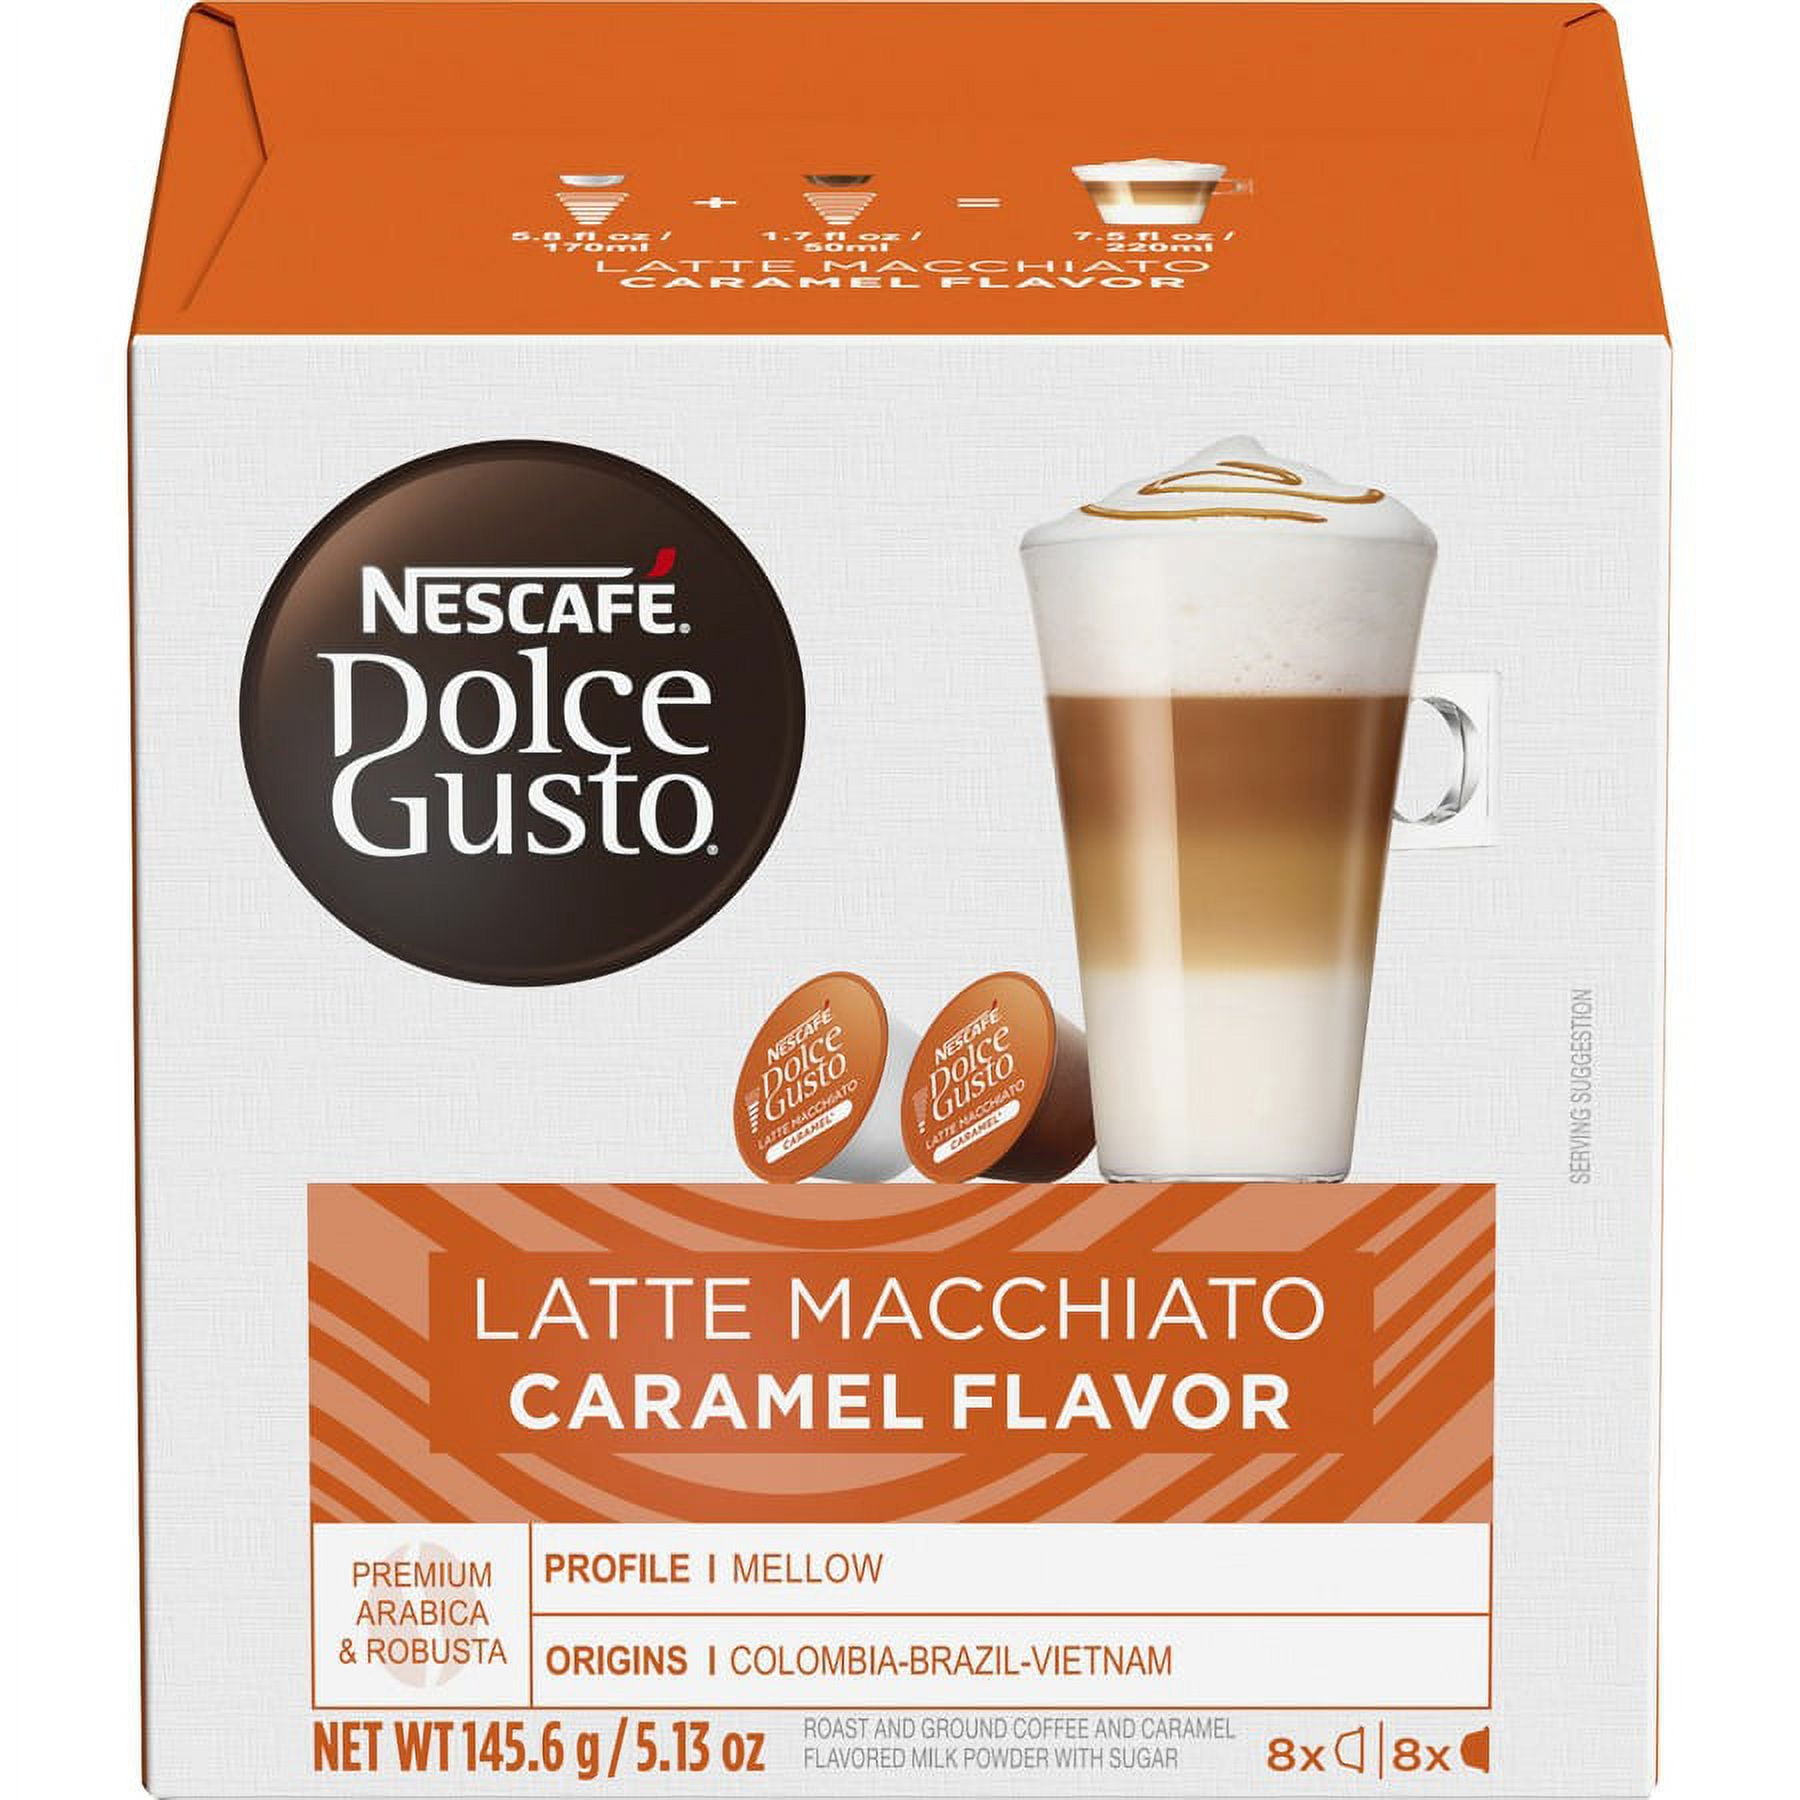 white Nescafe Dolce Gusto Italian Capsule home Coffee Machine